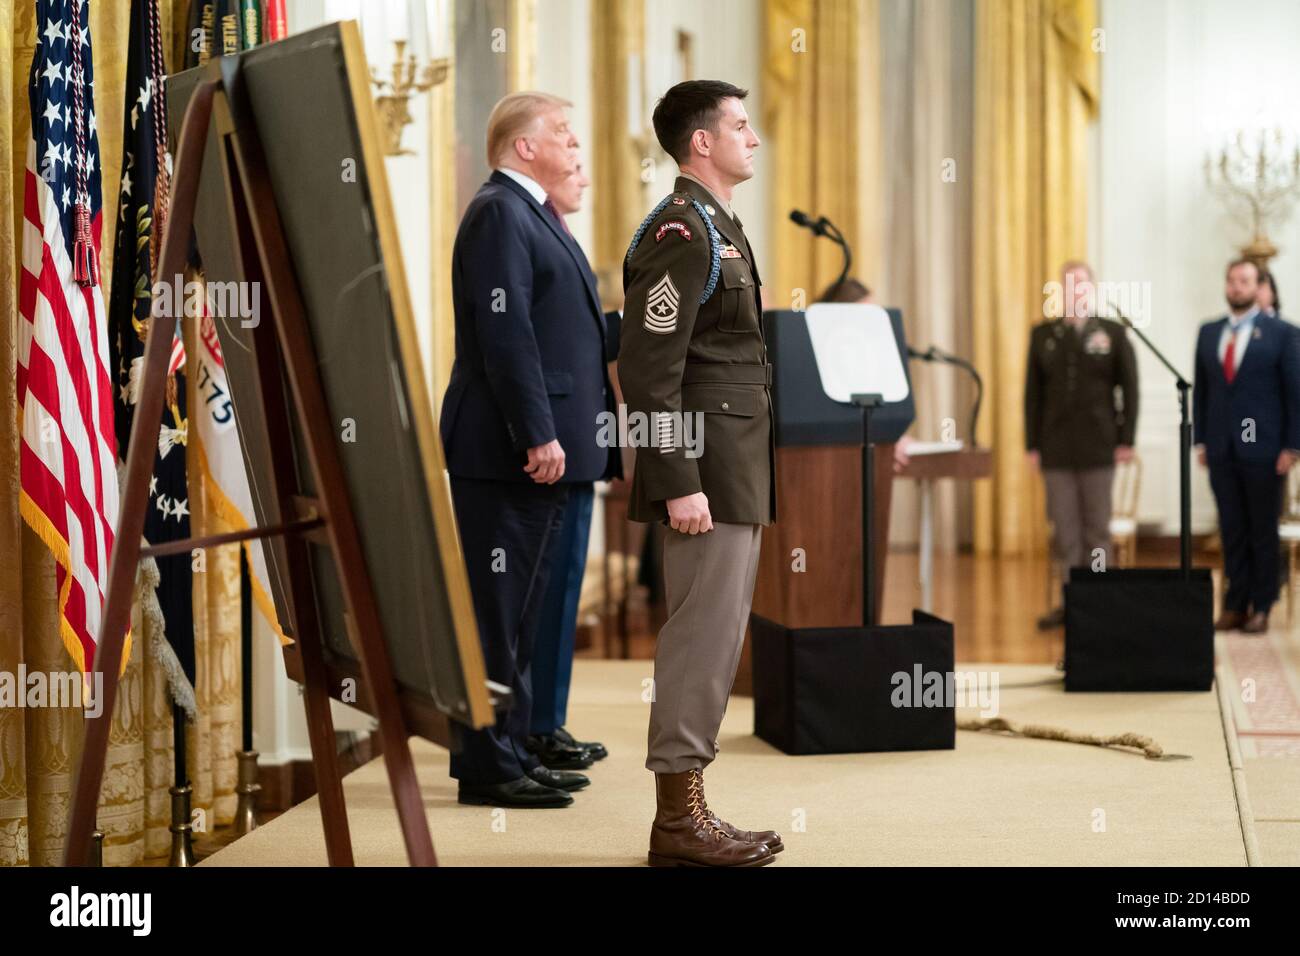 El presidente Trump presenta la Medalla de honor. El presidente Donald J. Trump está con la Medalla de honor de EE.UU. Ganador del Ejército Sgt. Thomas Patrick Payne, viernes 11 de septiembre de 2020, en la Sala este de la Casa Blanca, a quien se le otorga por sus heroicas acciones durante una misión de rescate de rehenes del 2015 de octubre en la provincia de Kirkuk en Irak. Foto de stock